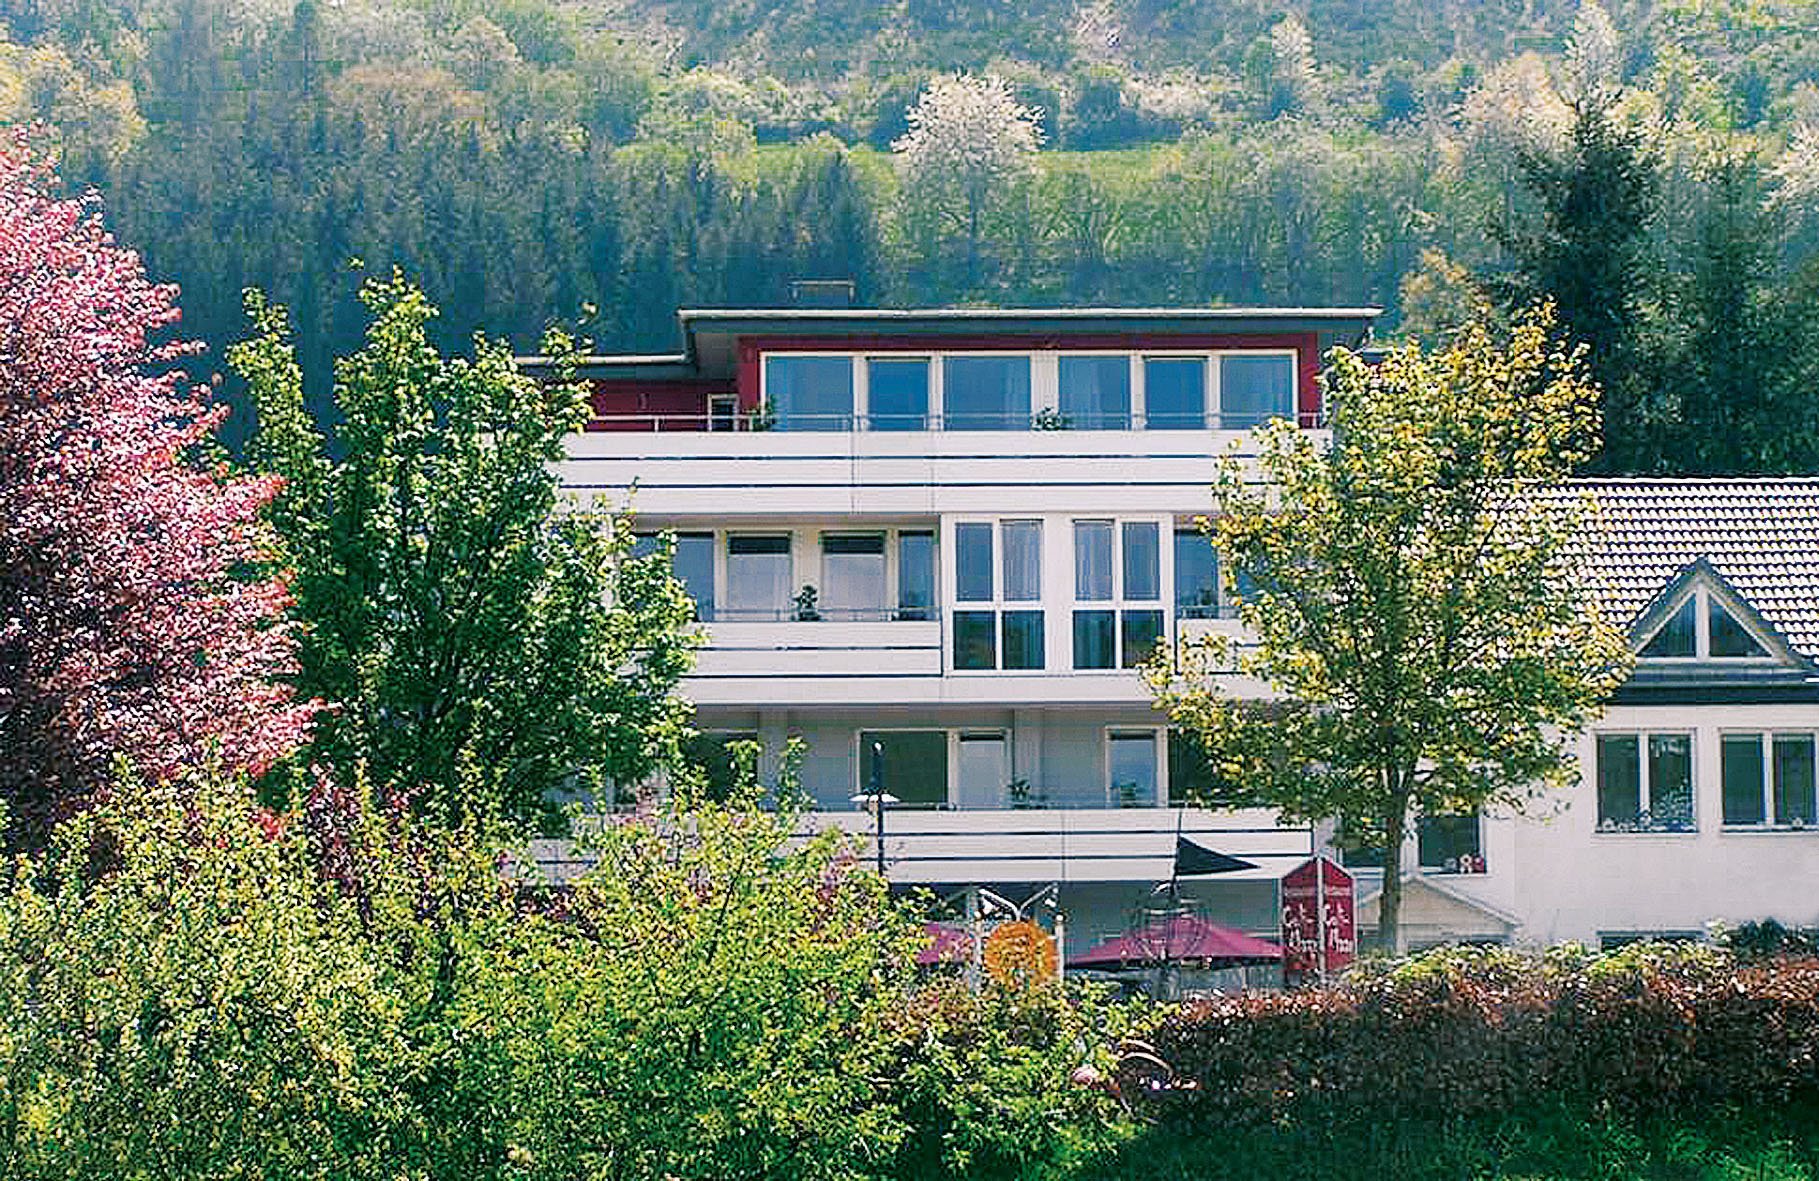 5 Tage Wochenmitte – Ihr Deal – Landhotel Maarium (3.5 Sterne) in Meerfeld, Rheinland-Pfalz